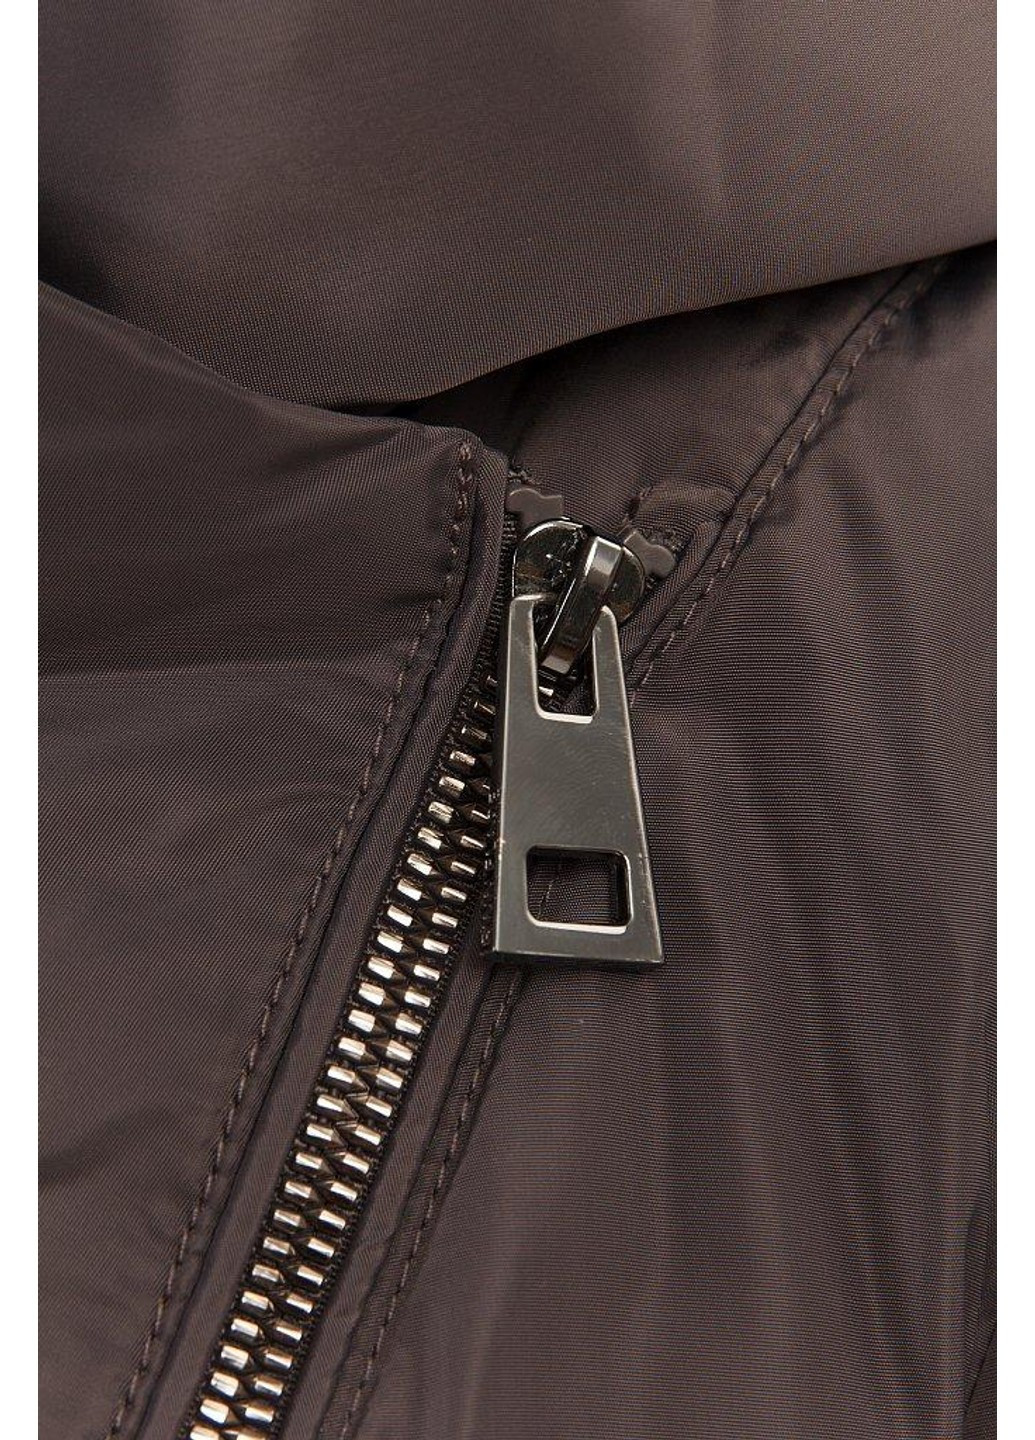 Темно-серая зимняя зимняя куртка a19-11010-202 Finn Flare